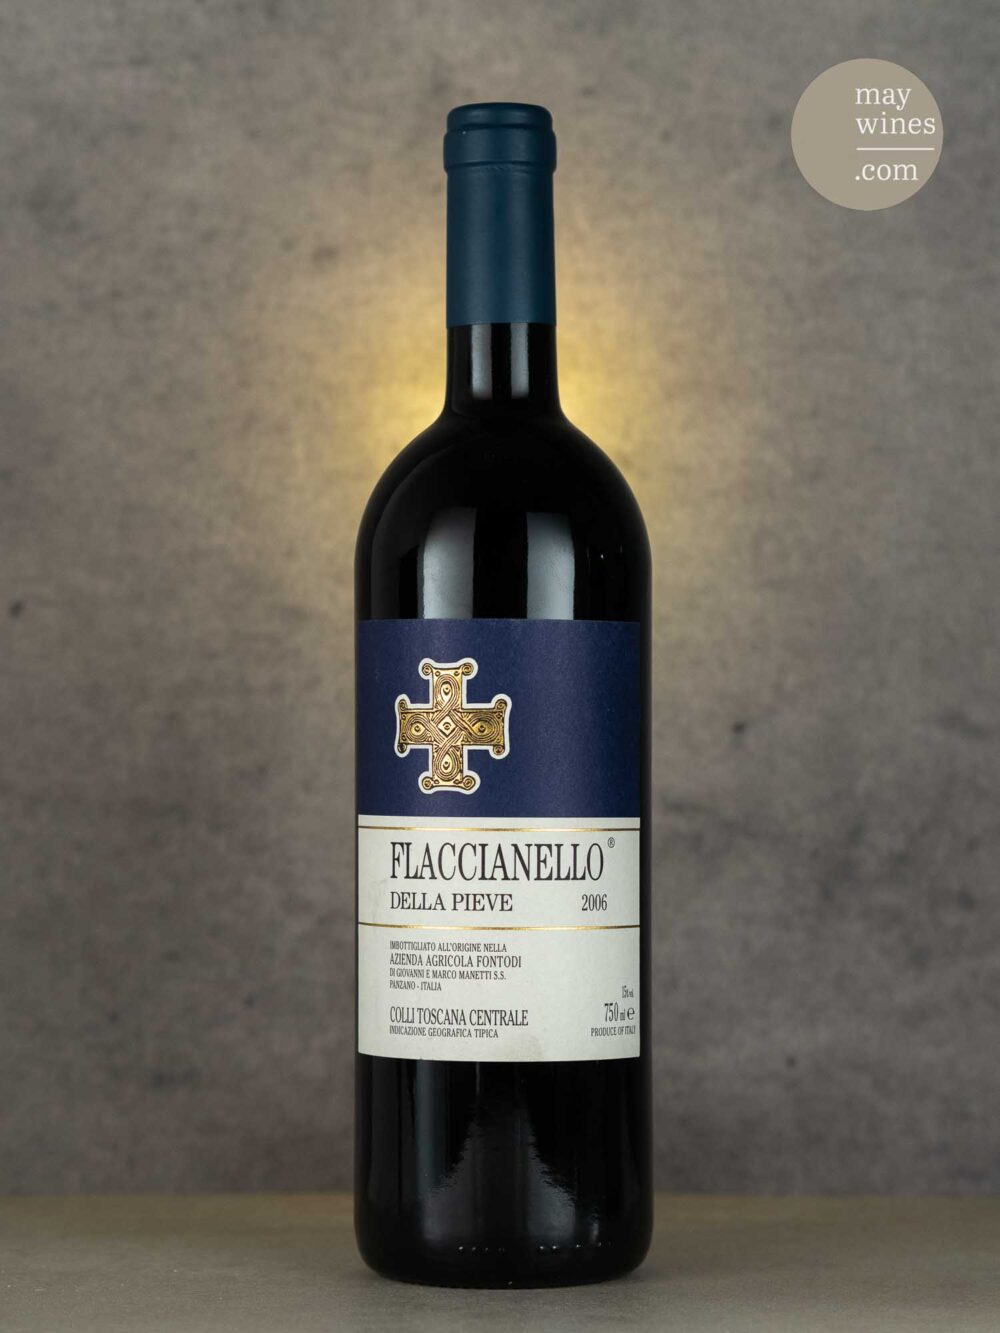 May Wines – Rotwein – 2006 Flaccianello della Pieve - Fontodi